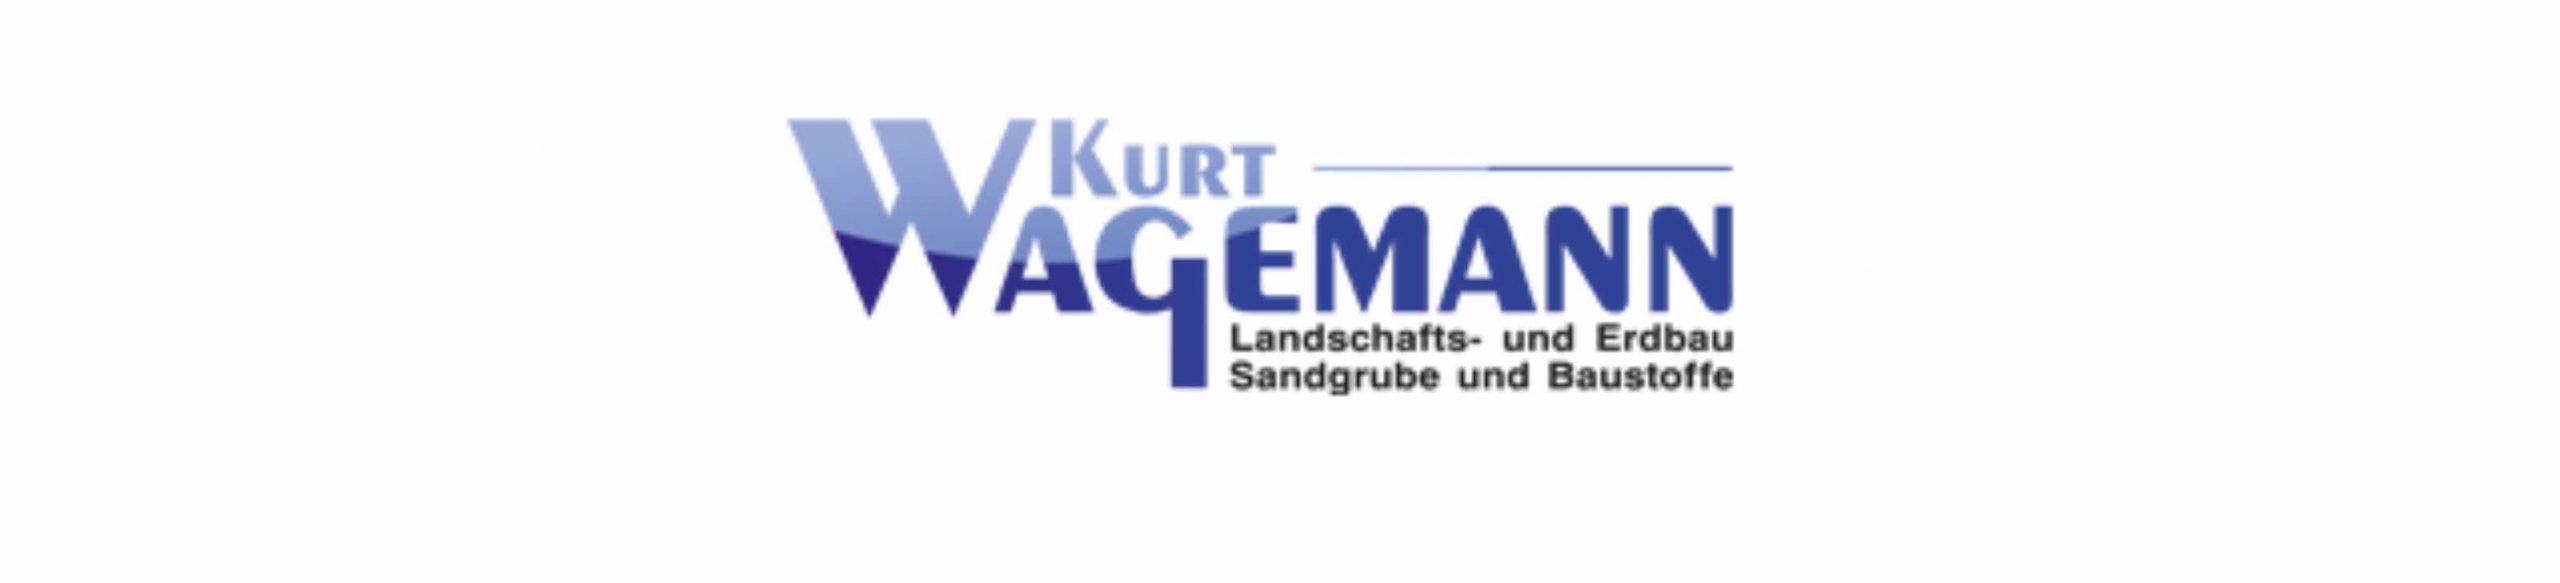 Kurt Wagemann e.K. Baustoffe - Halle (Westfalen)